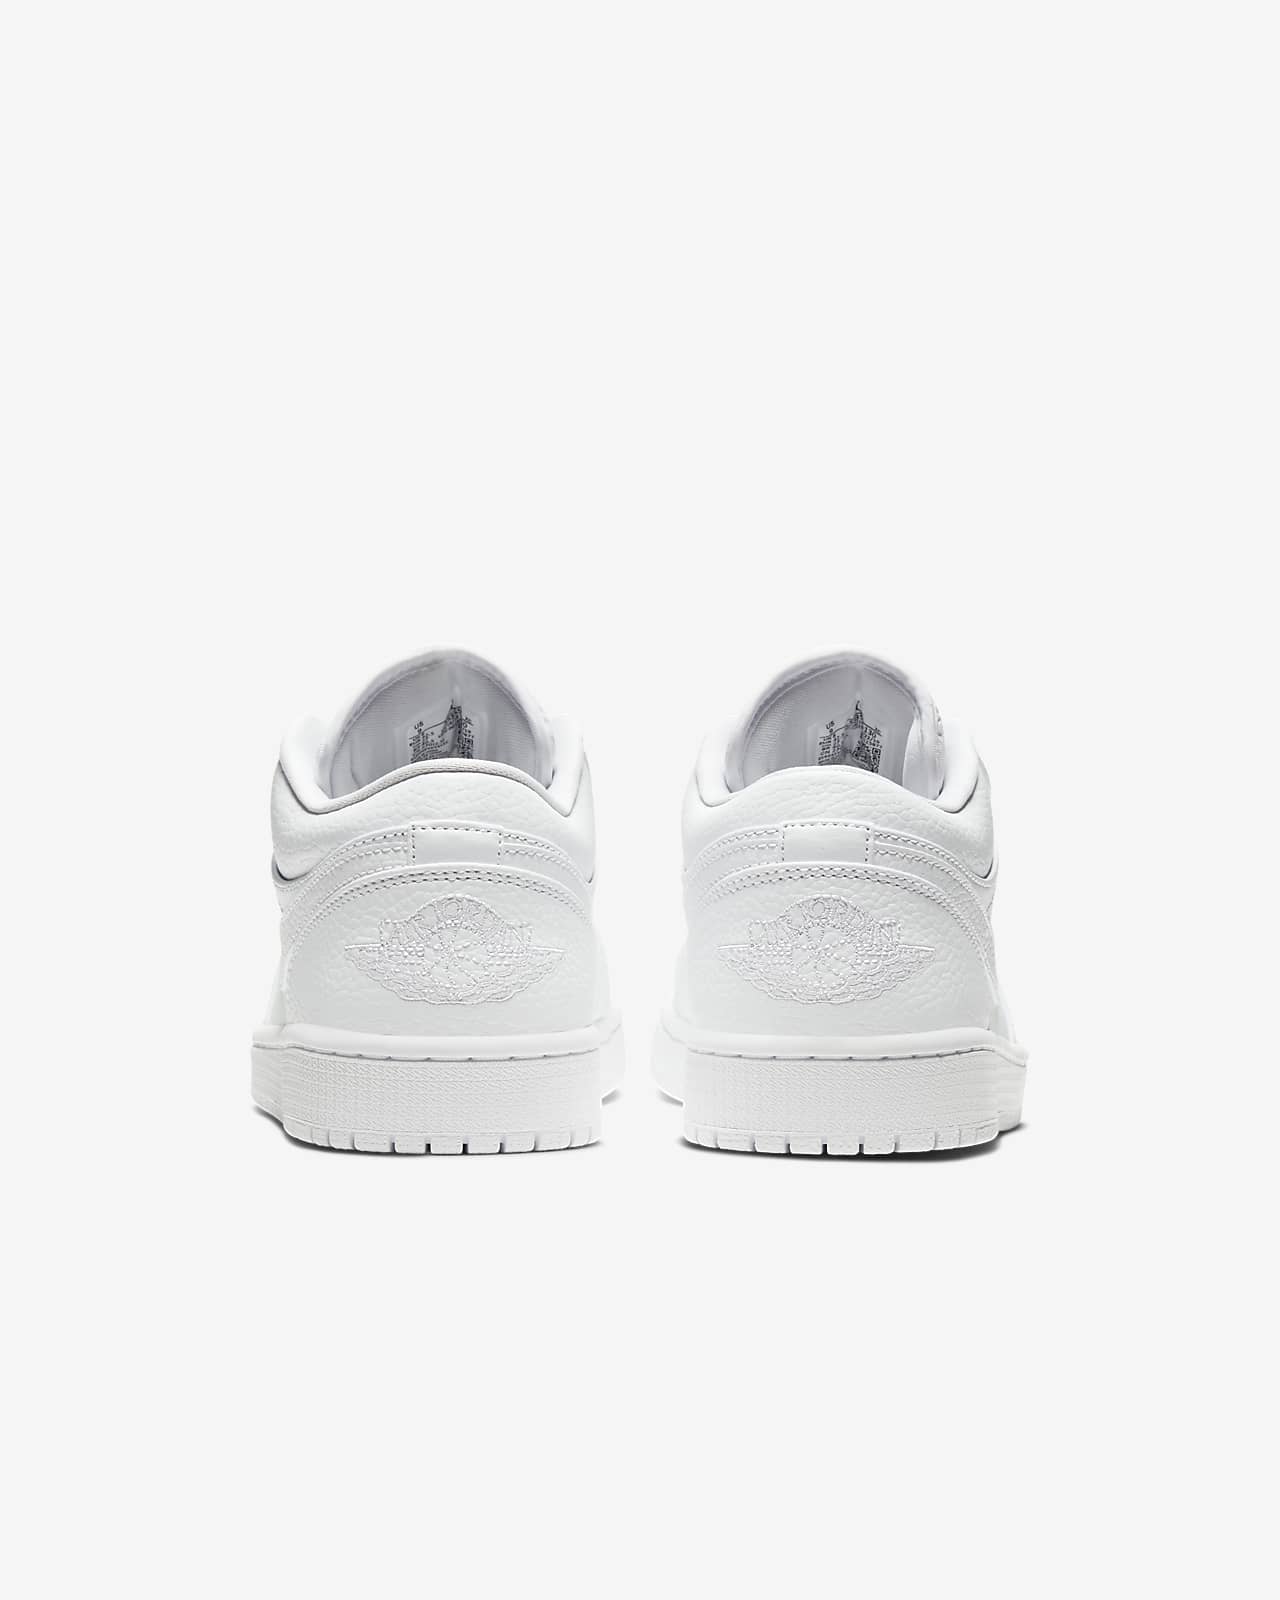 Air Jordan 1 Low Shoe. Nike LU